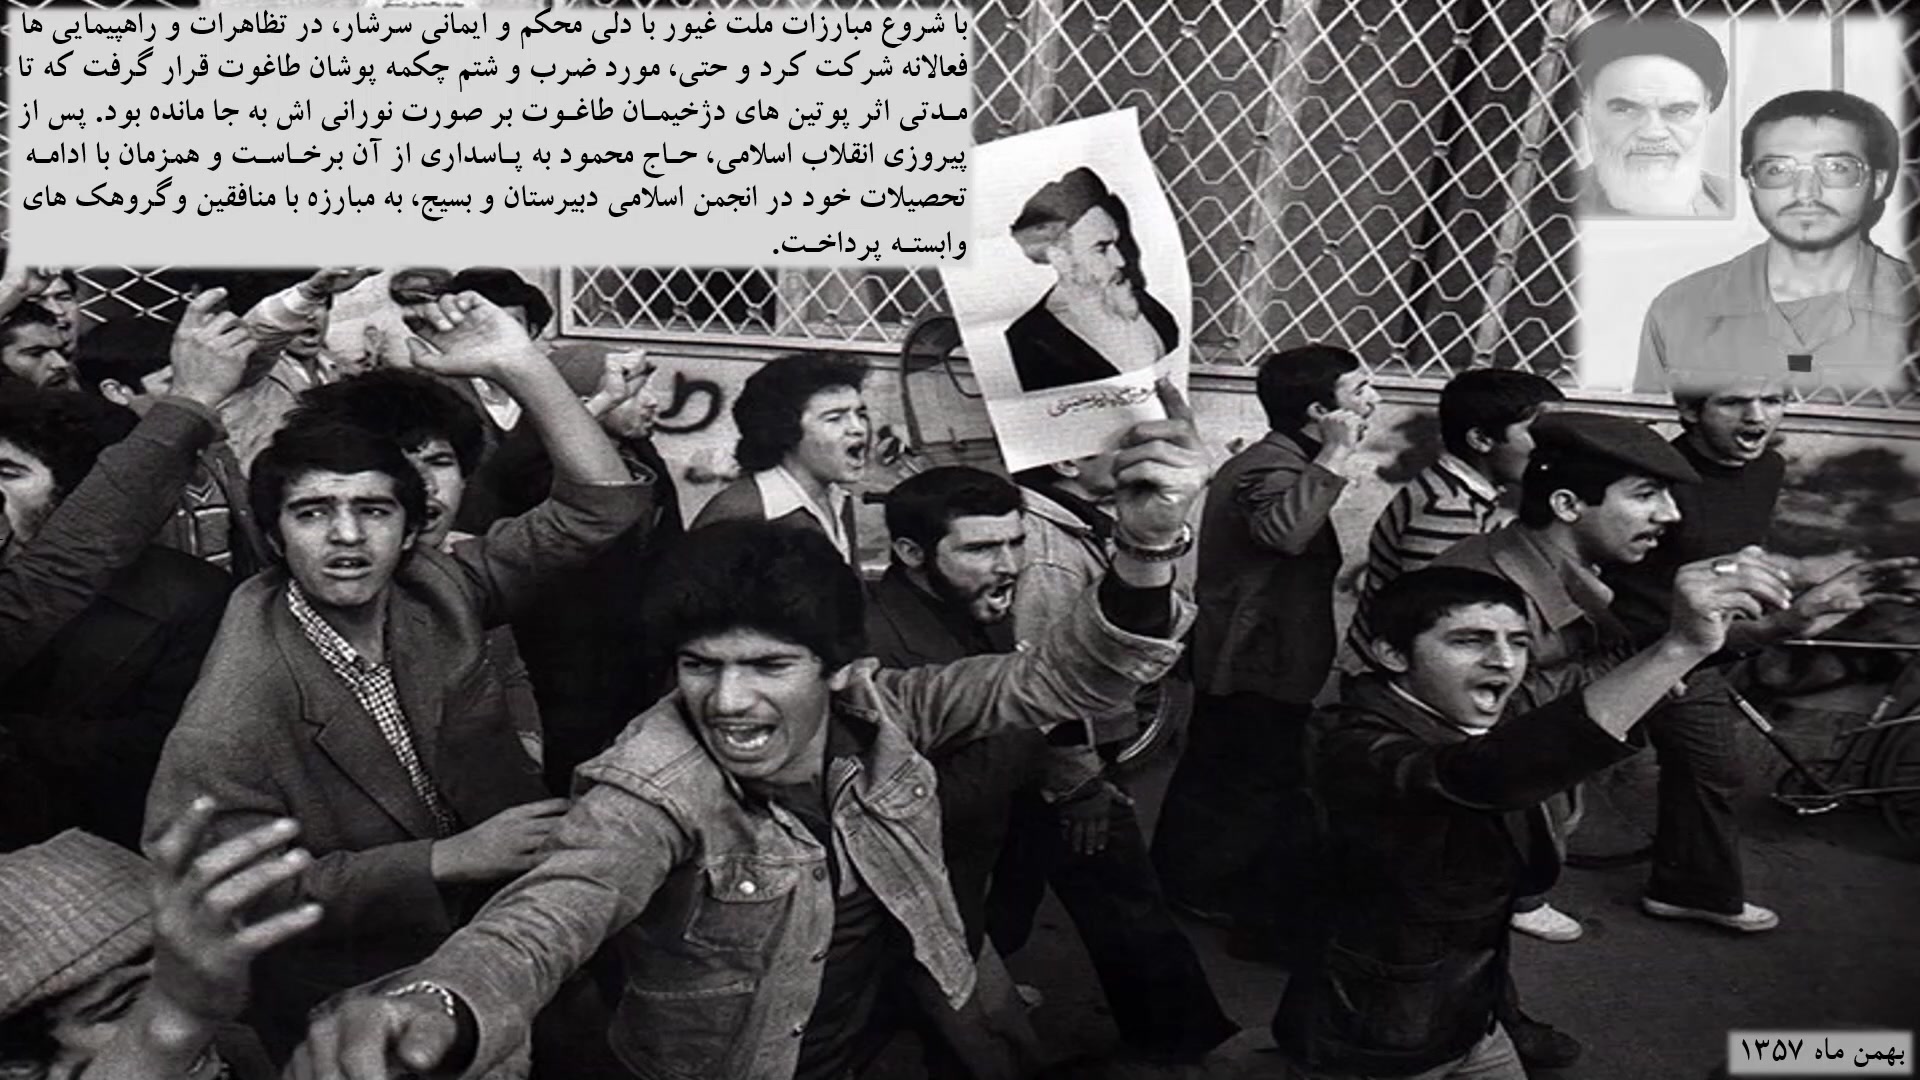 مستند زندگینامه ای پاسدار شهید سردار حاج محمود جهان پناه